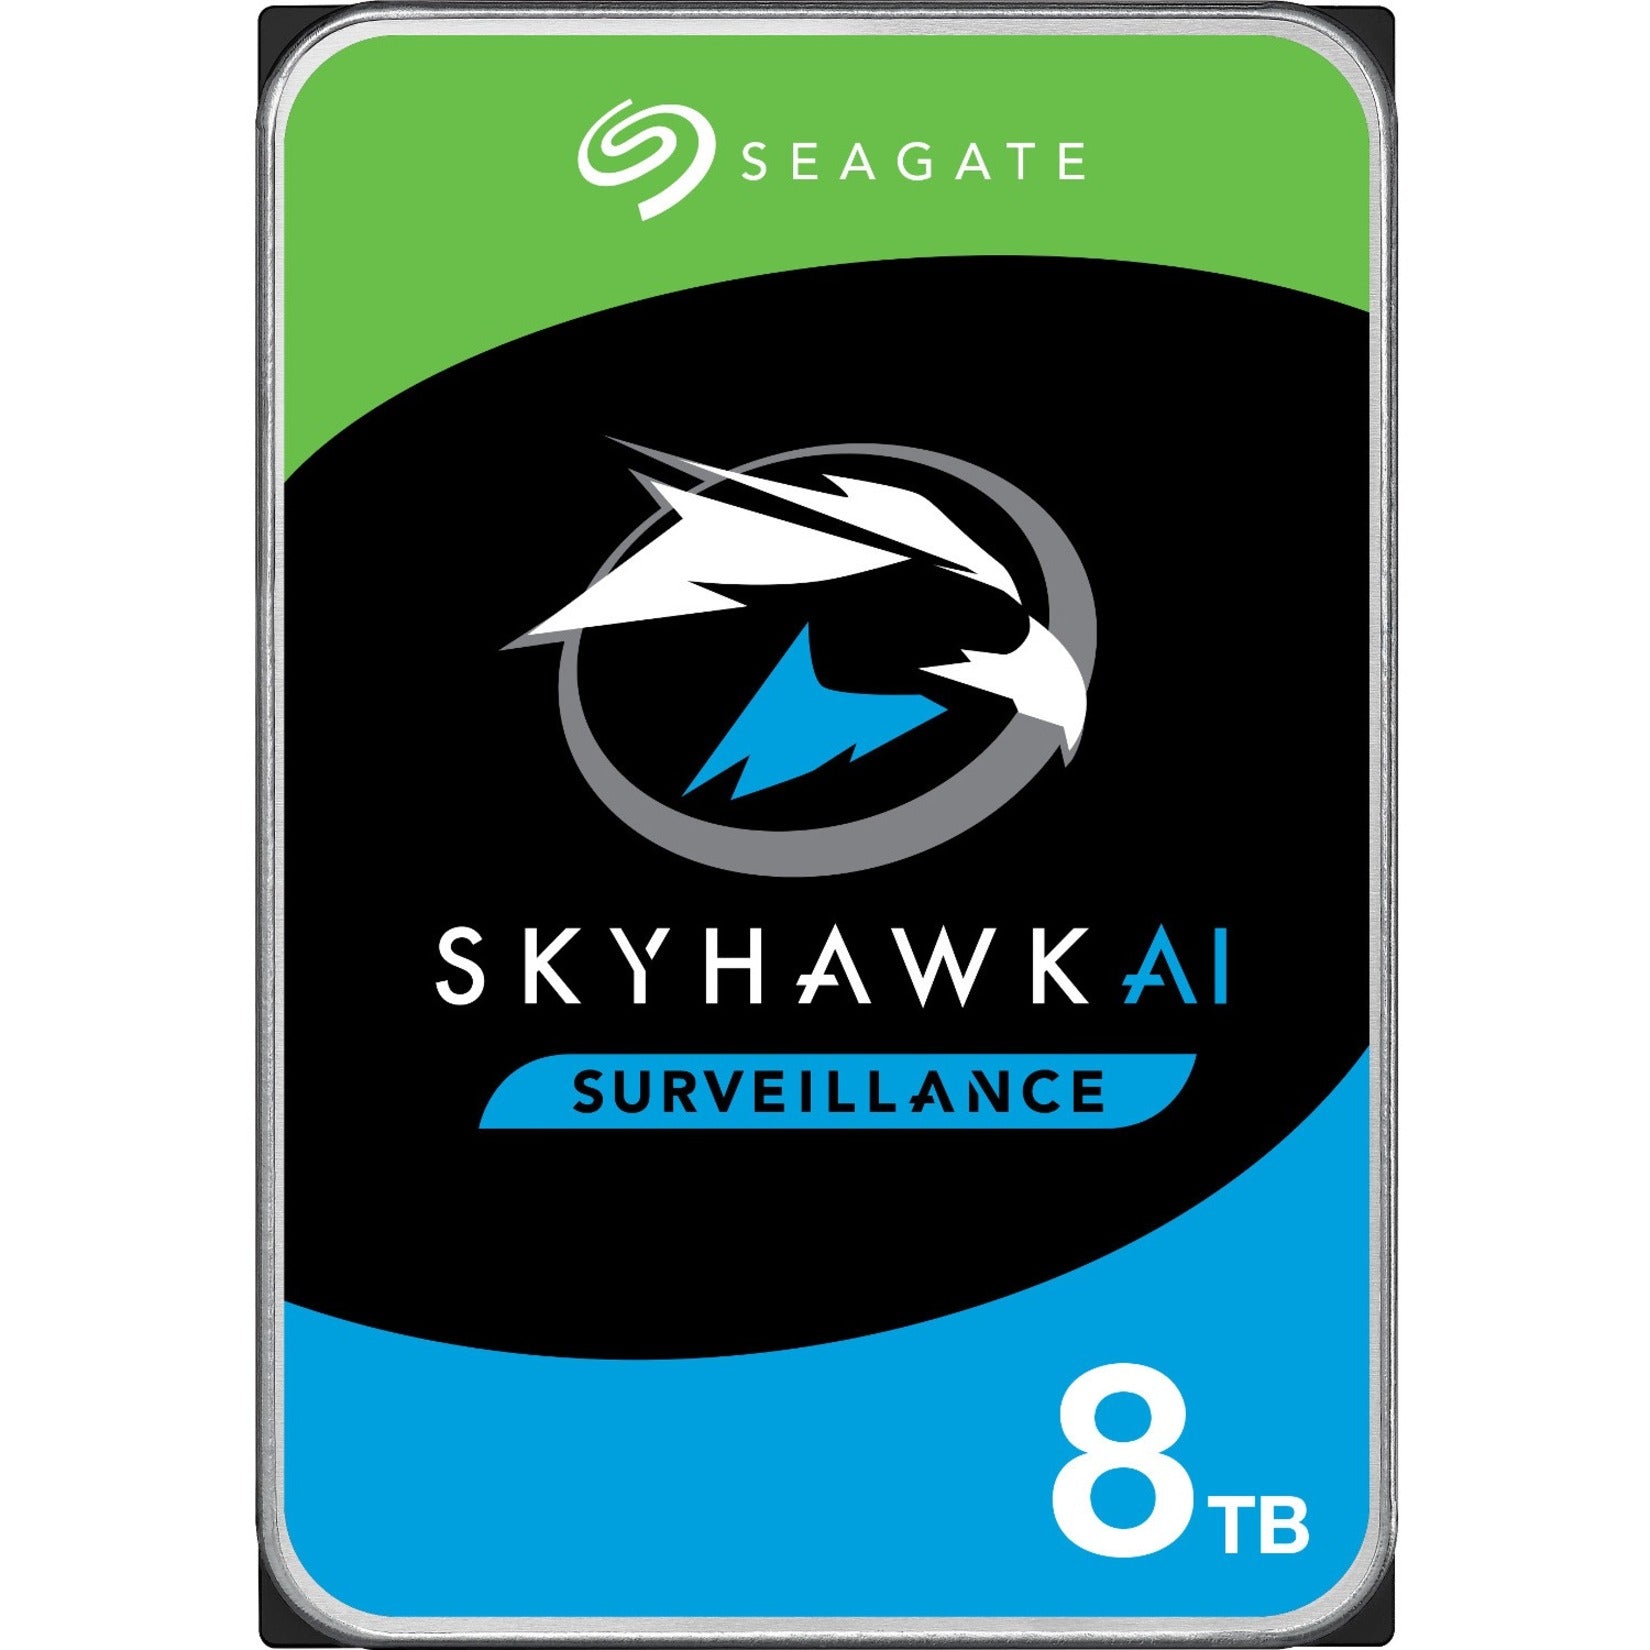 Seagate ST8000VE001 SkyHawk AI 8TB Unidad de Disco Duro Almacenamiento de Vigilancia 24x7. Marca: Seagate. Traducir marca: Seagate.